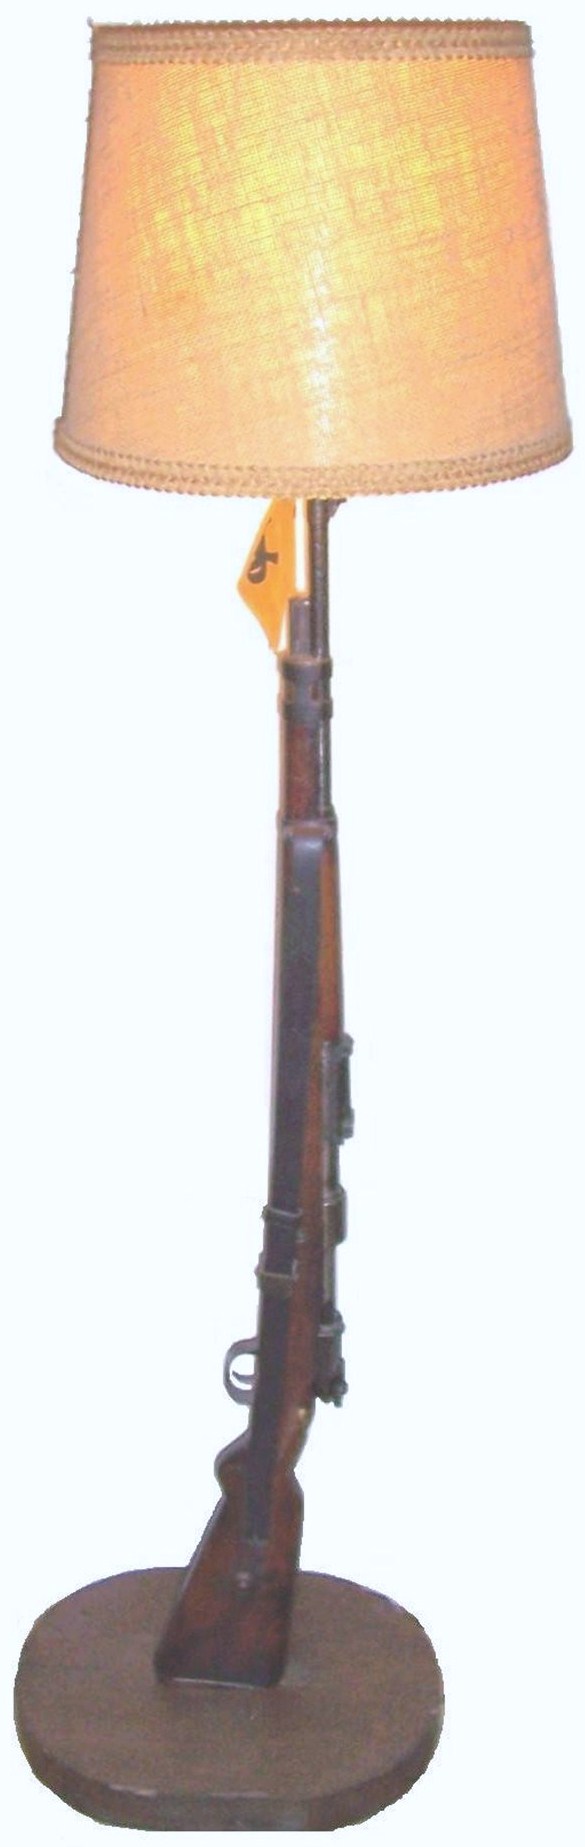 Mauser 98 k "lampadaire" Mauser12